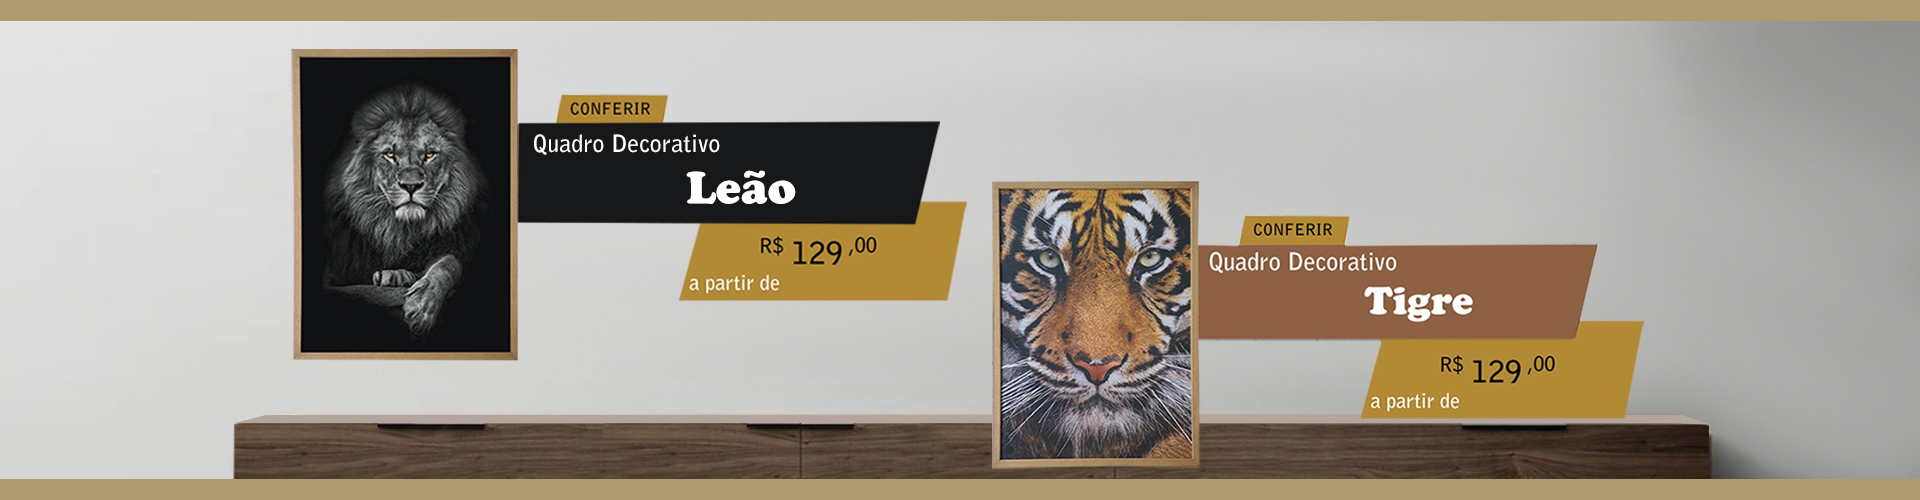 Quadro Decorativo Leão e Tigre